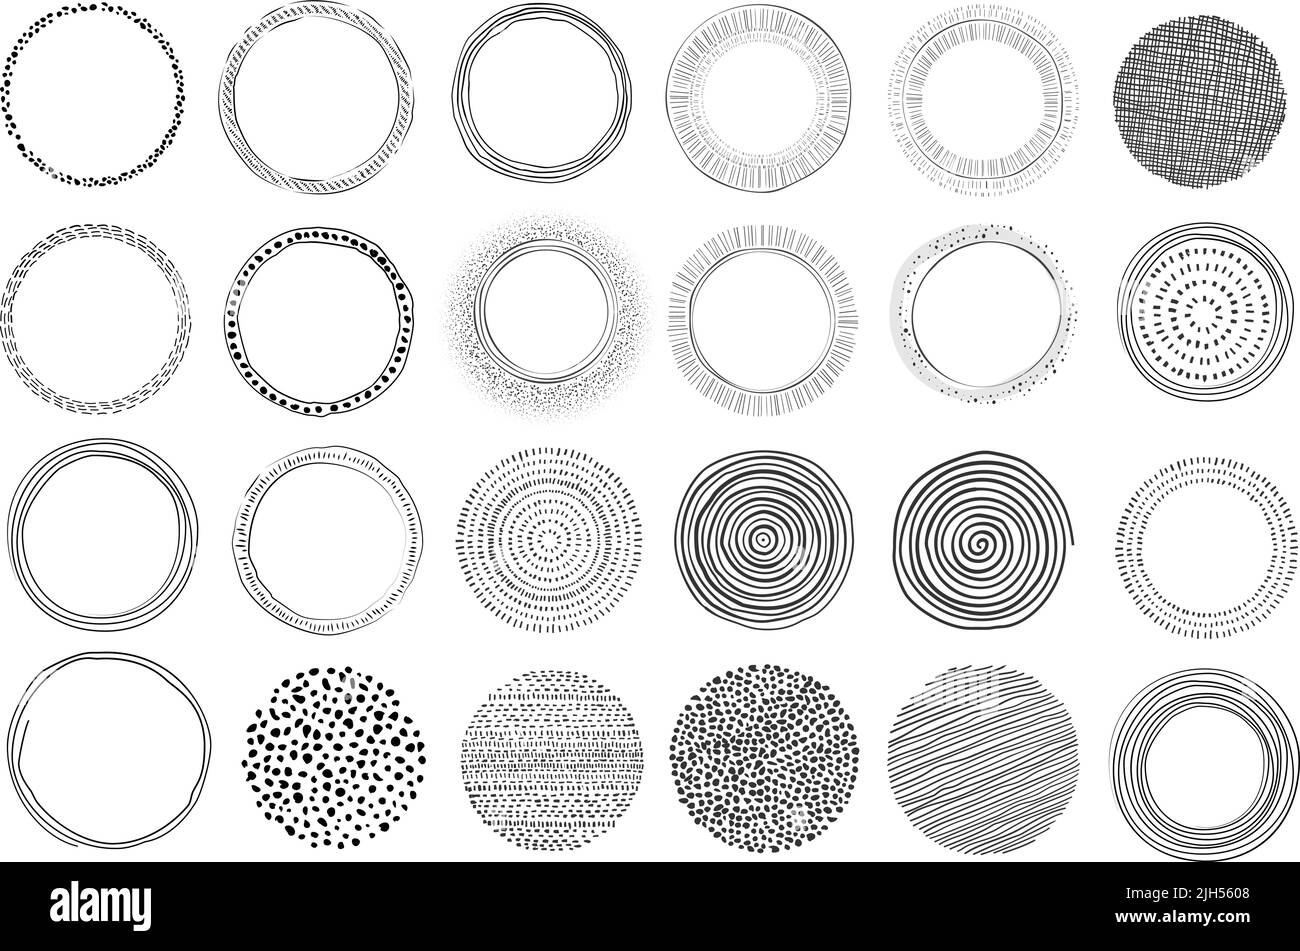 grande collezione di elementi grafici circolari disegnati a mano, forme moderne isolate su bianco, illustrazione vettoriale Illustrazione Vettoriale